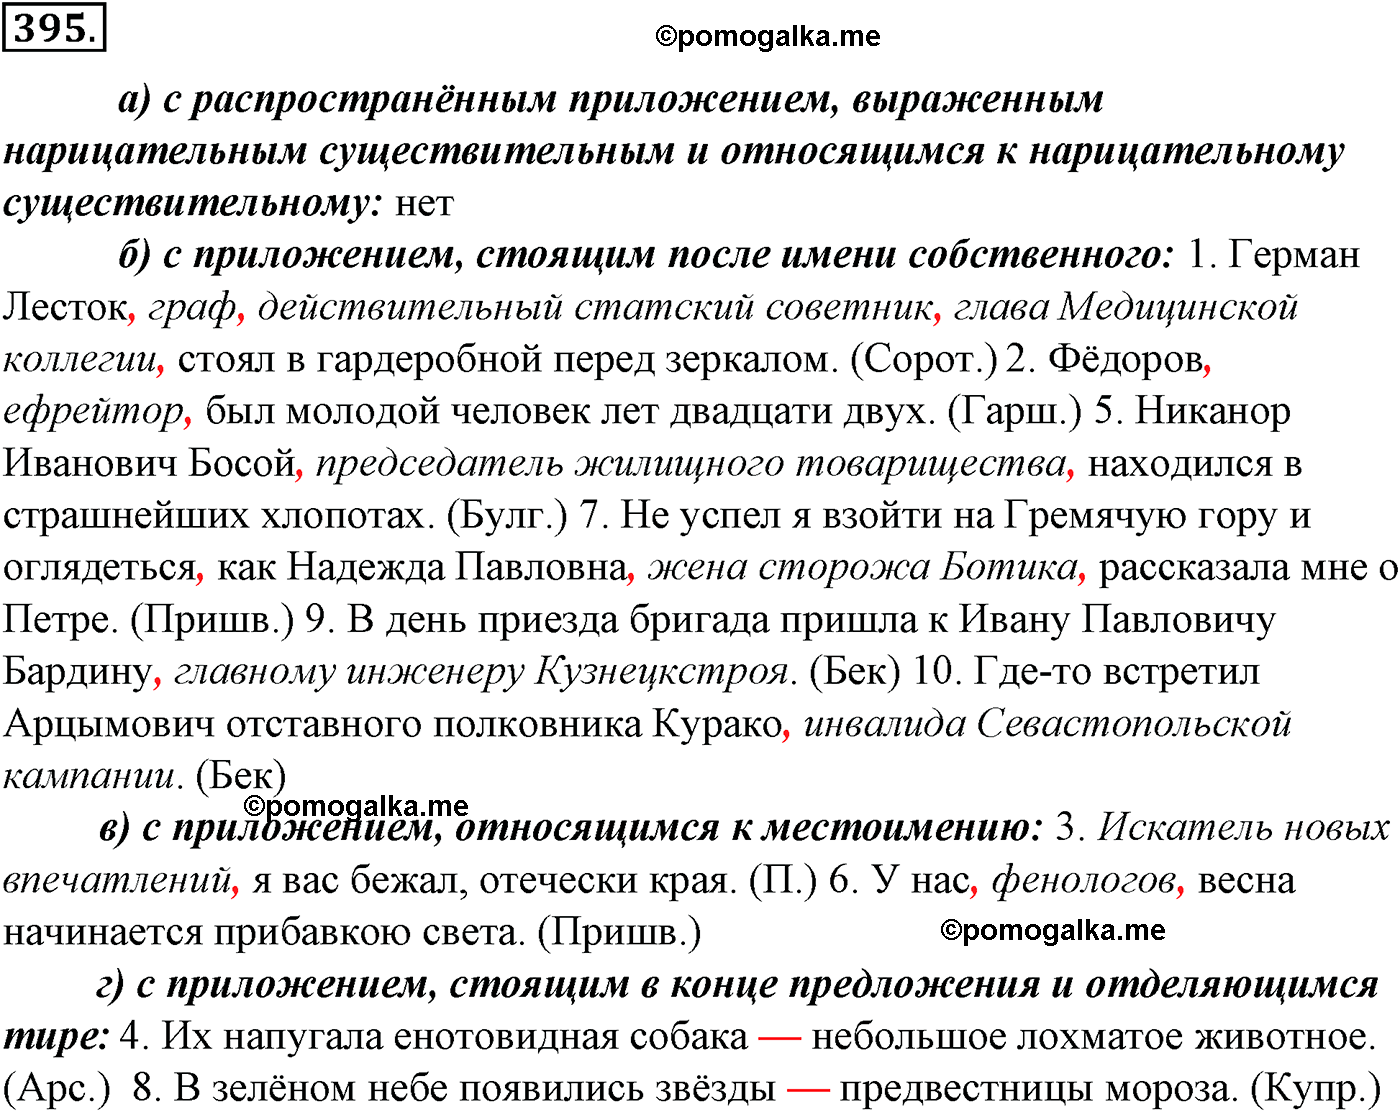 упражнение №395 русский язык 10-11 класс Гольцова